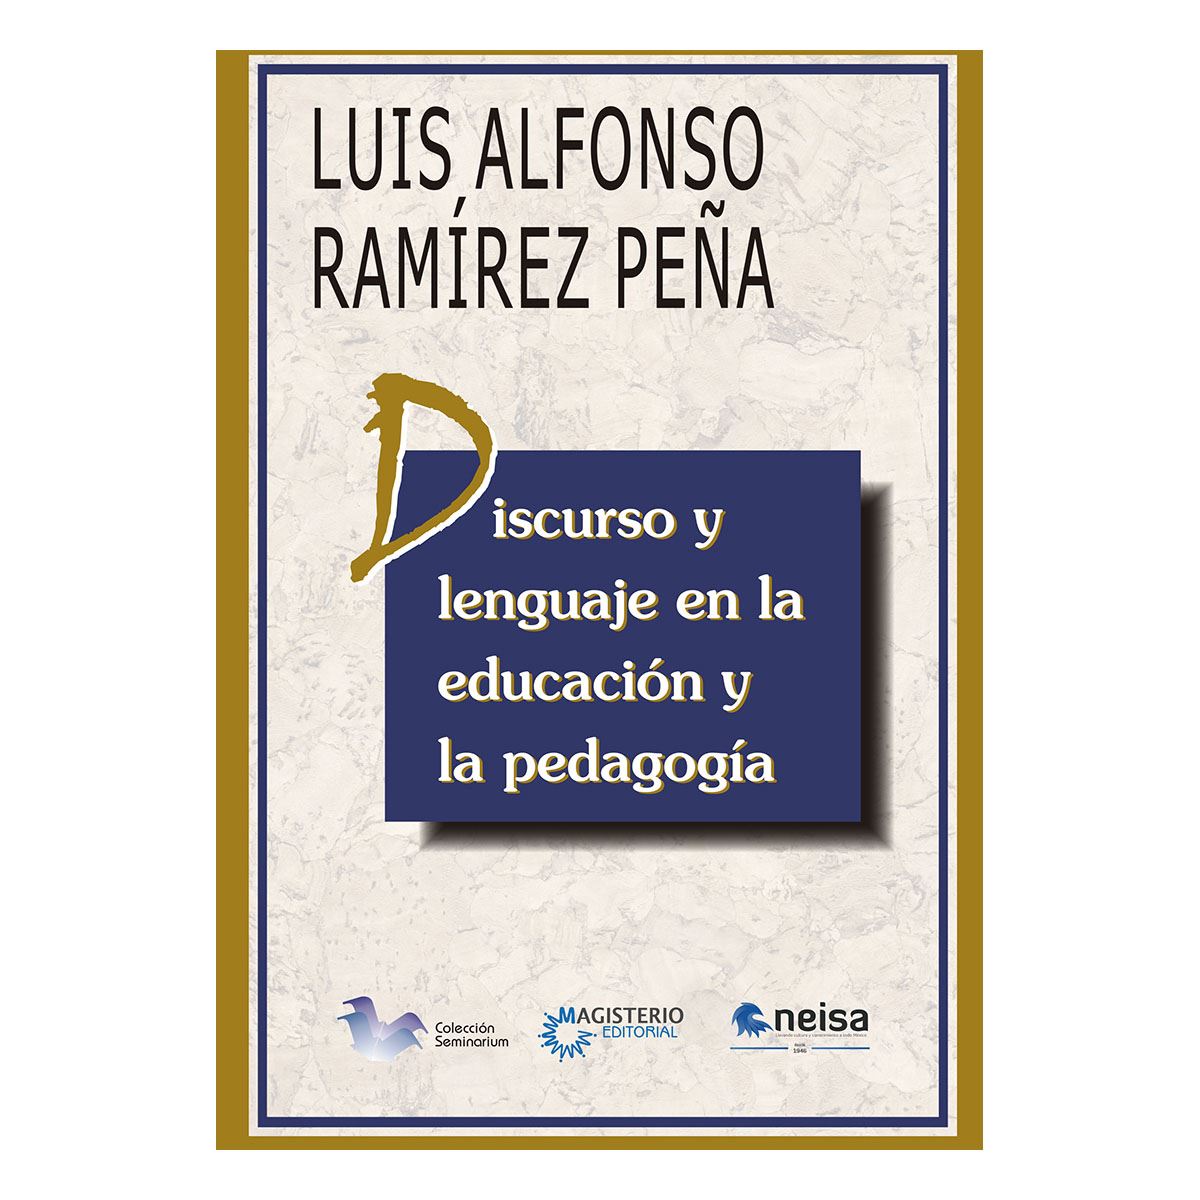 Discurso y lenguaje en la educación y la pedagogía